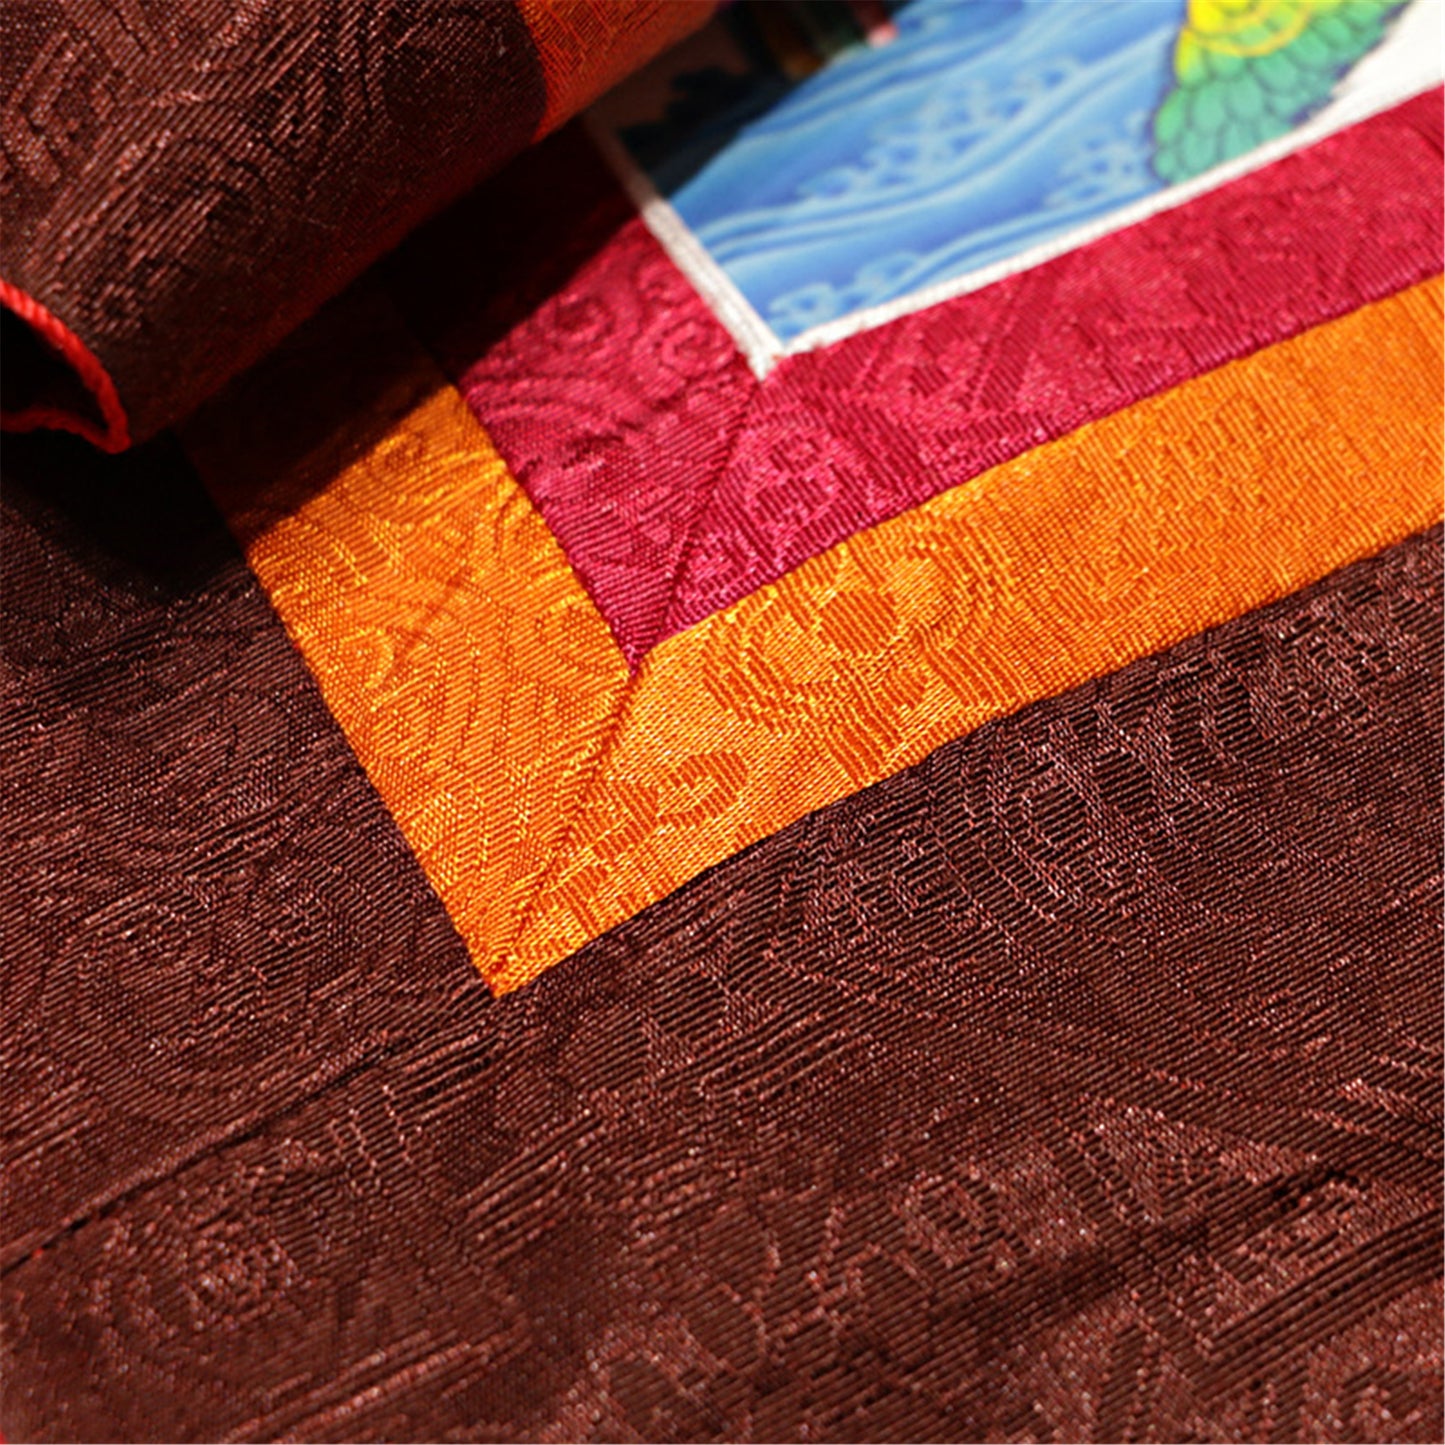 Gandhanra-Thangka-Details-cloth-texture